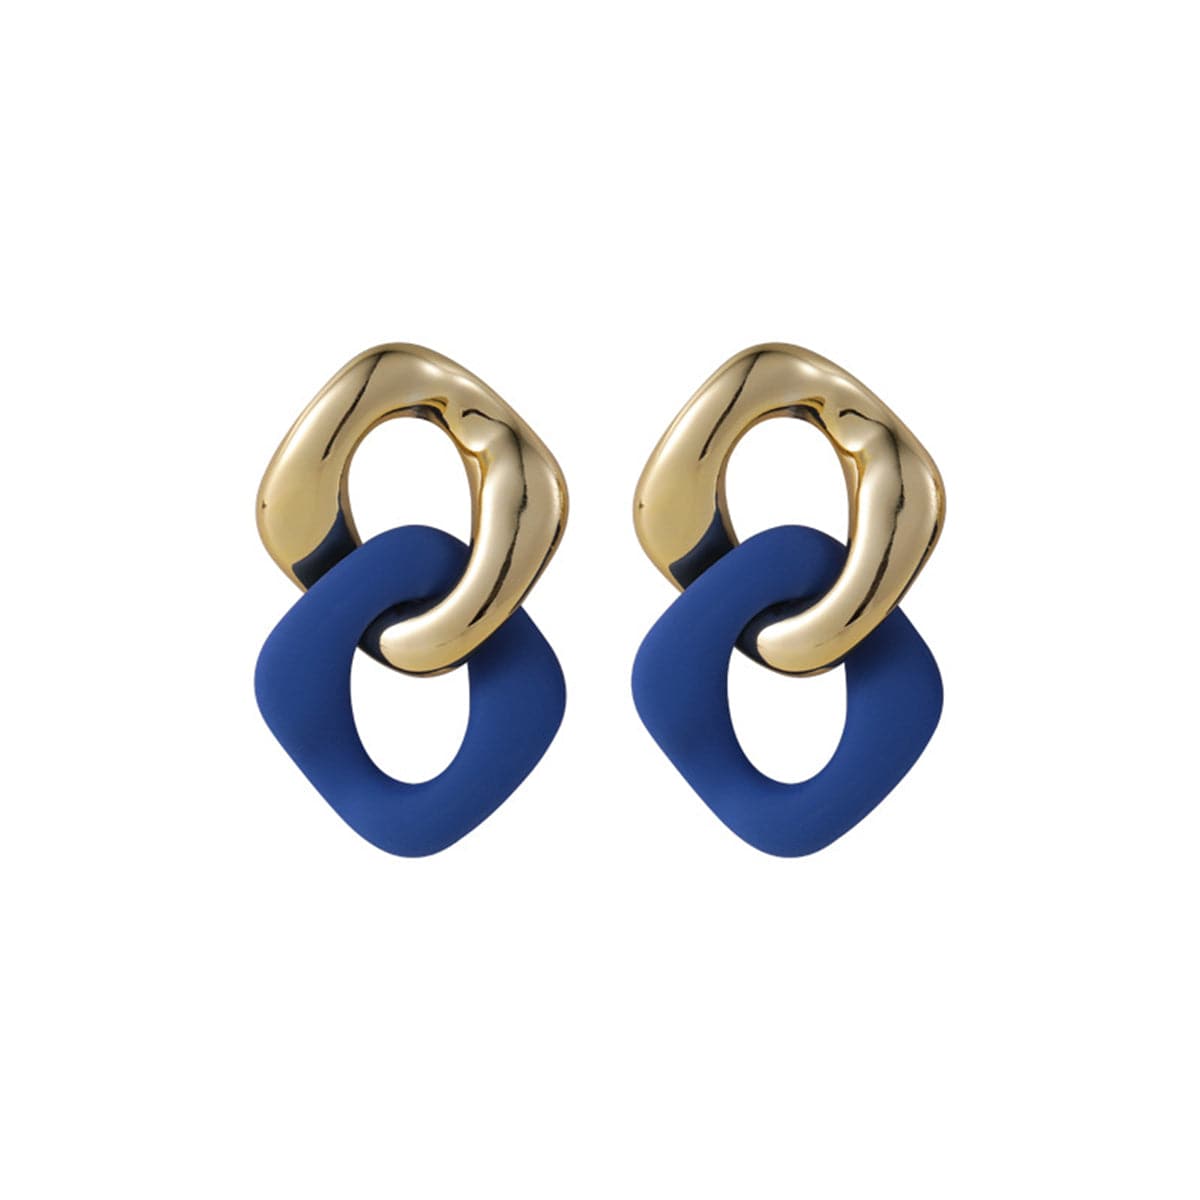 Blue Enamel & 18K Gold-Plated Interlocked Rhombus Drop Earrings